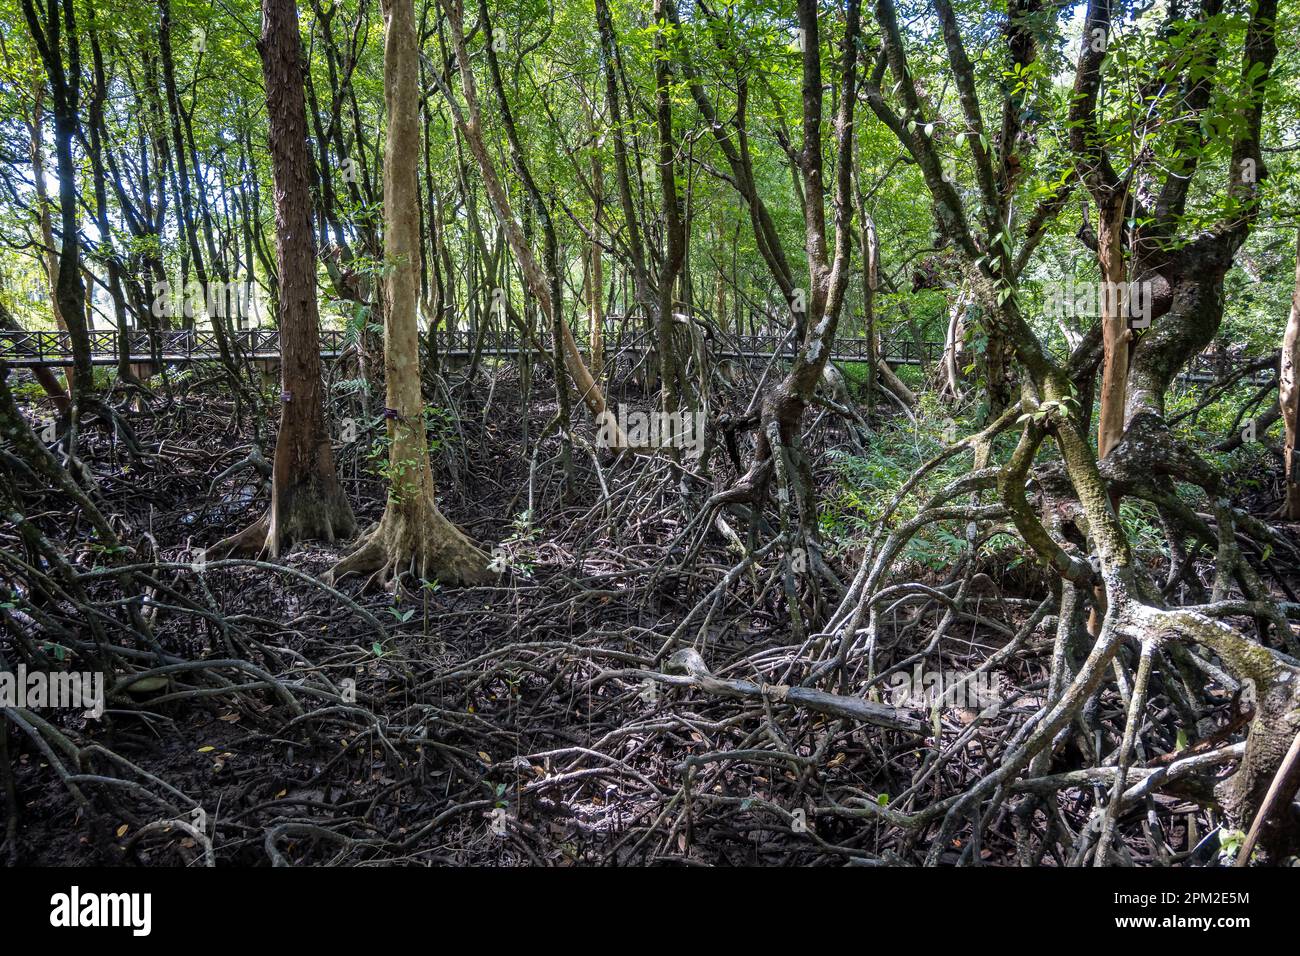 Système racinaire de la mangrove rouge (Rhizophora mucronata) exposé à marée basse dans un parc local. Phang-nga, Thaïlande. Banque D'Images